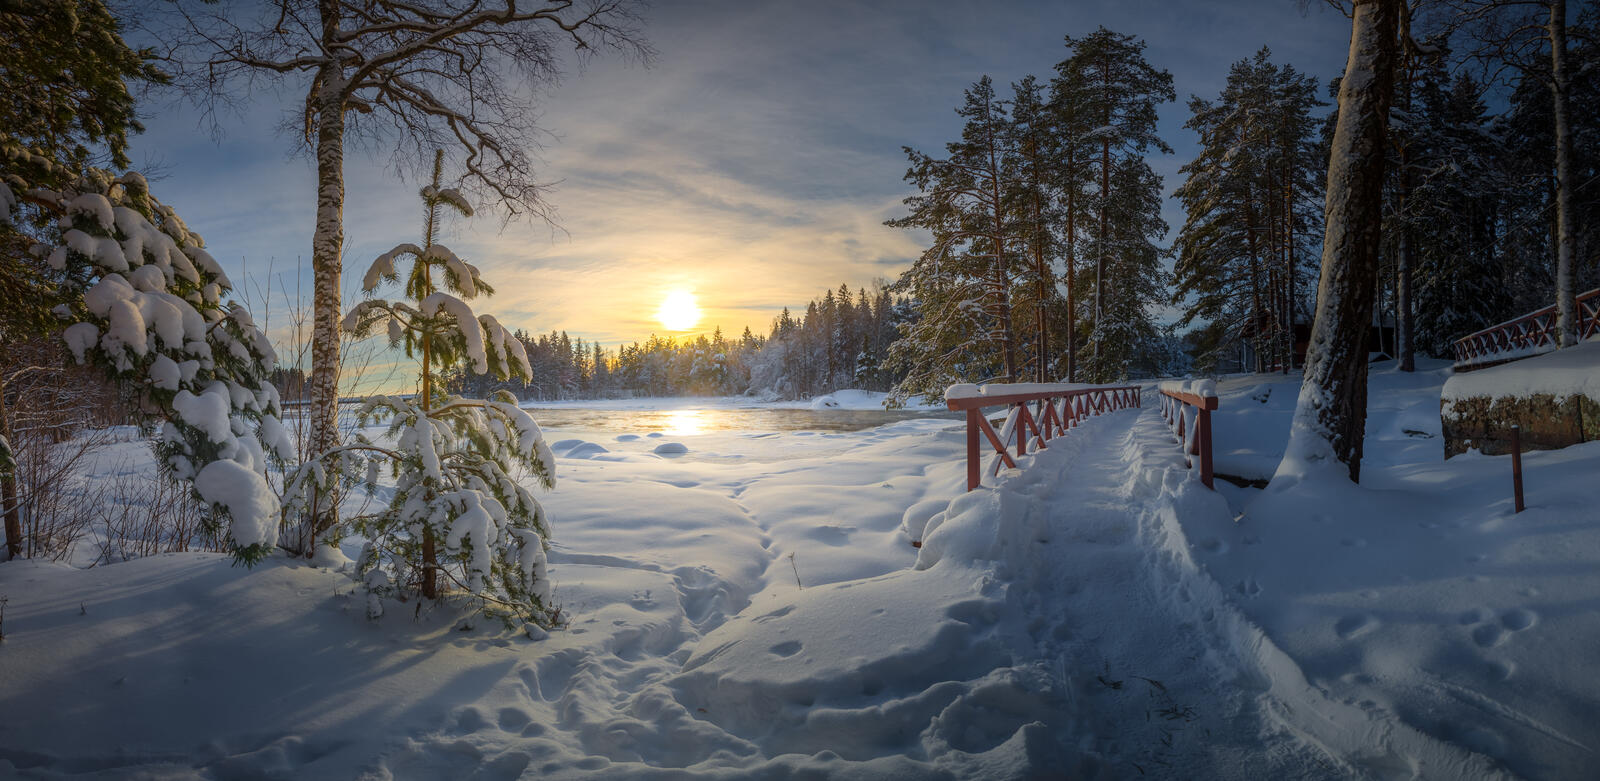 Обои Финляндия Лангинкоски снежный вид на рабочий стол